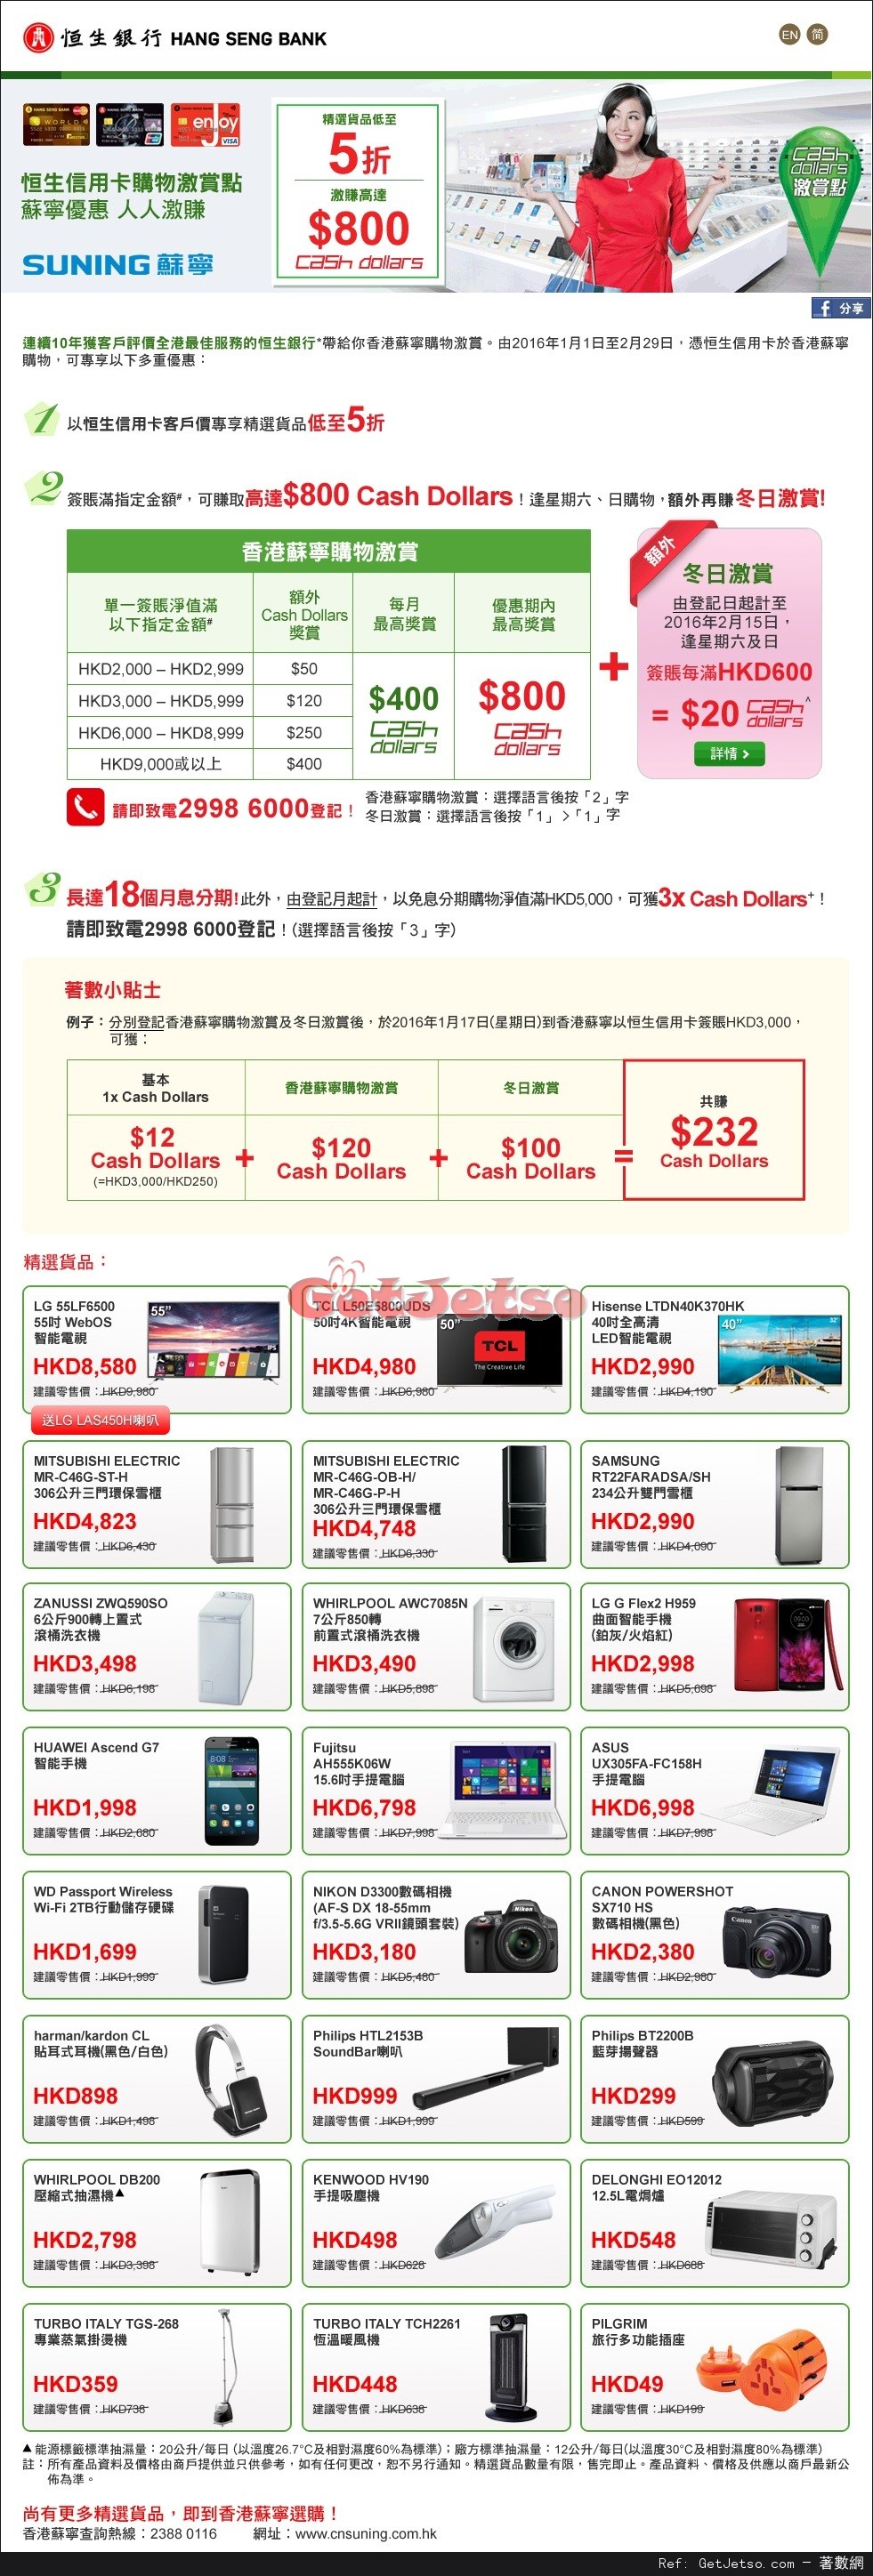 恒生信用卡享香港蘇寧電器精選貨品低至半價優惠(至16年2月29日)圖片1